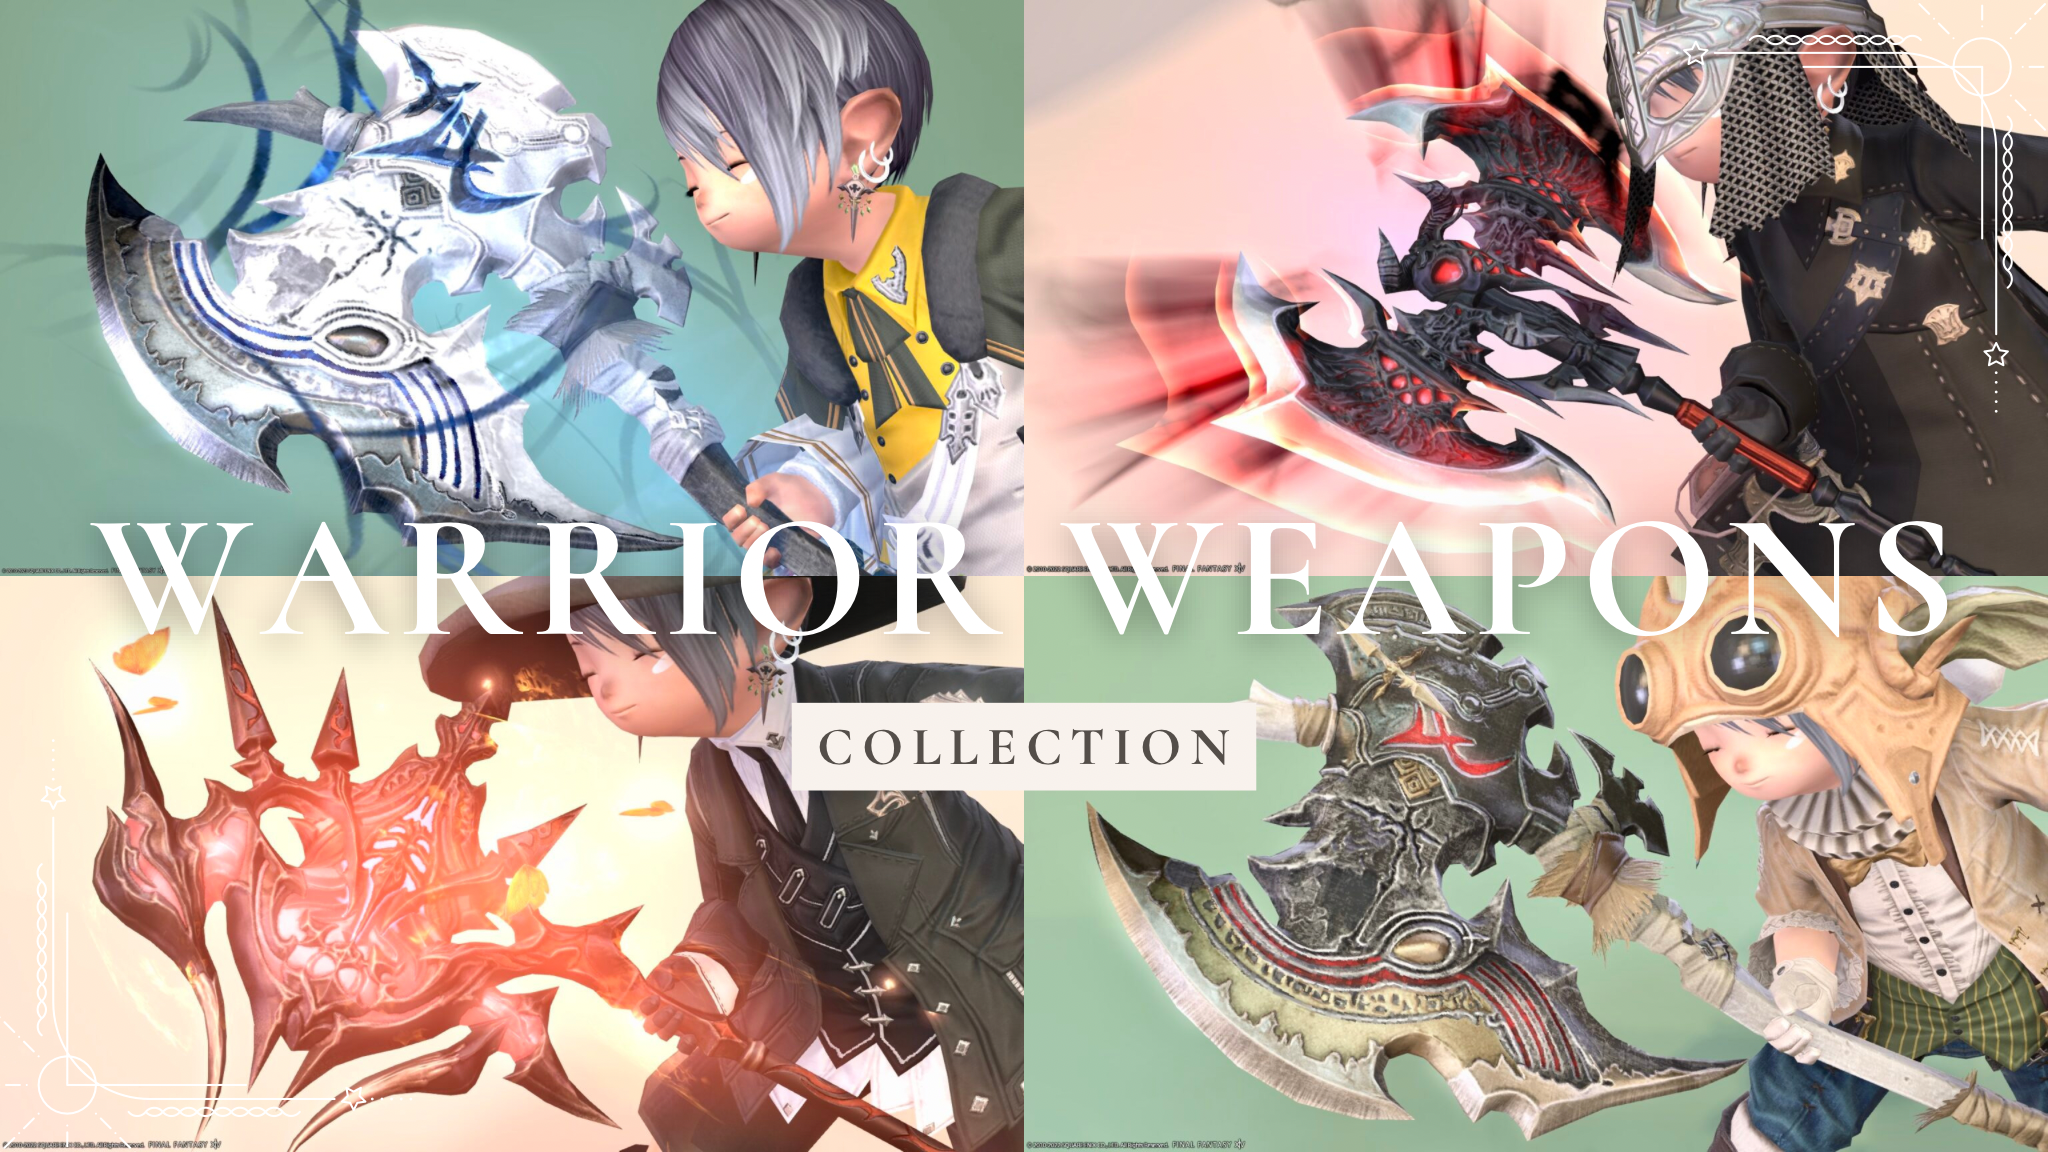 Warrior Arm